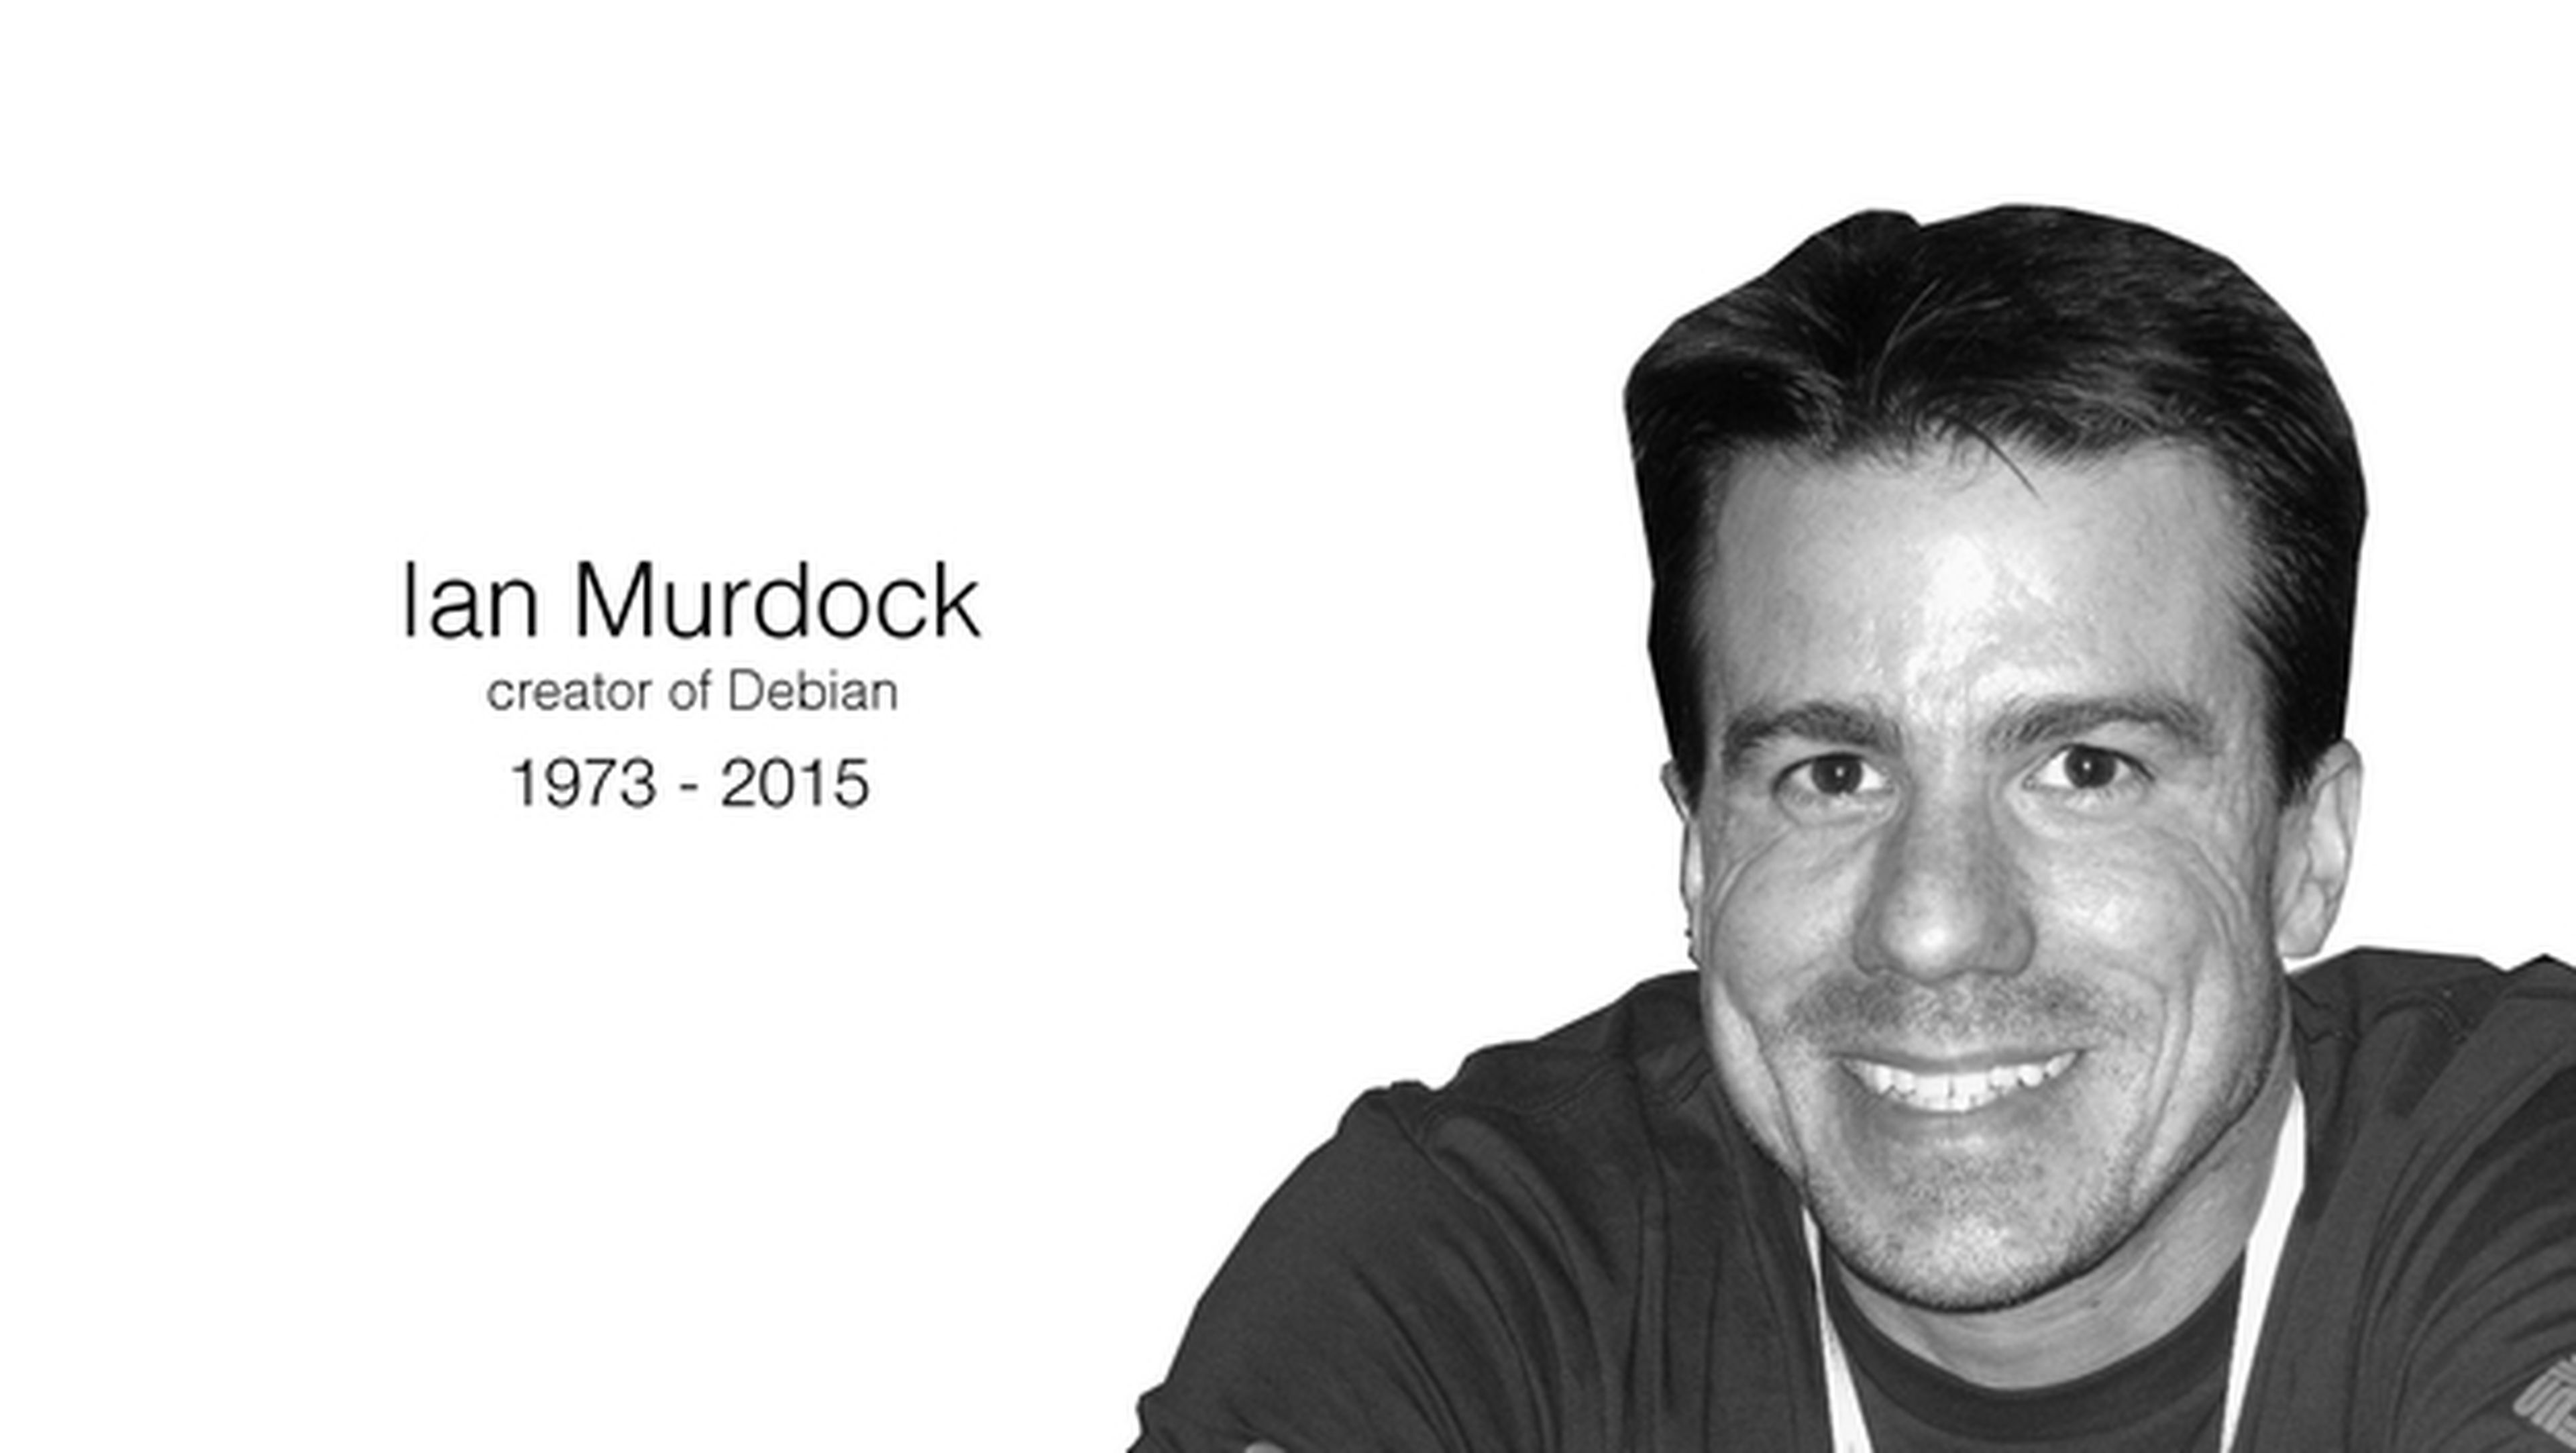 Fallece Ian Murdock, creador de Debian Linux, a los 42 años